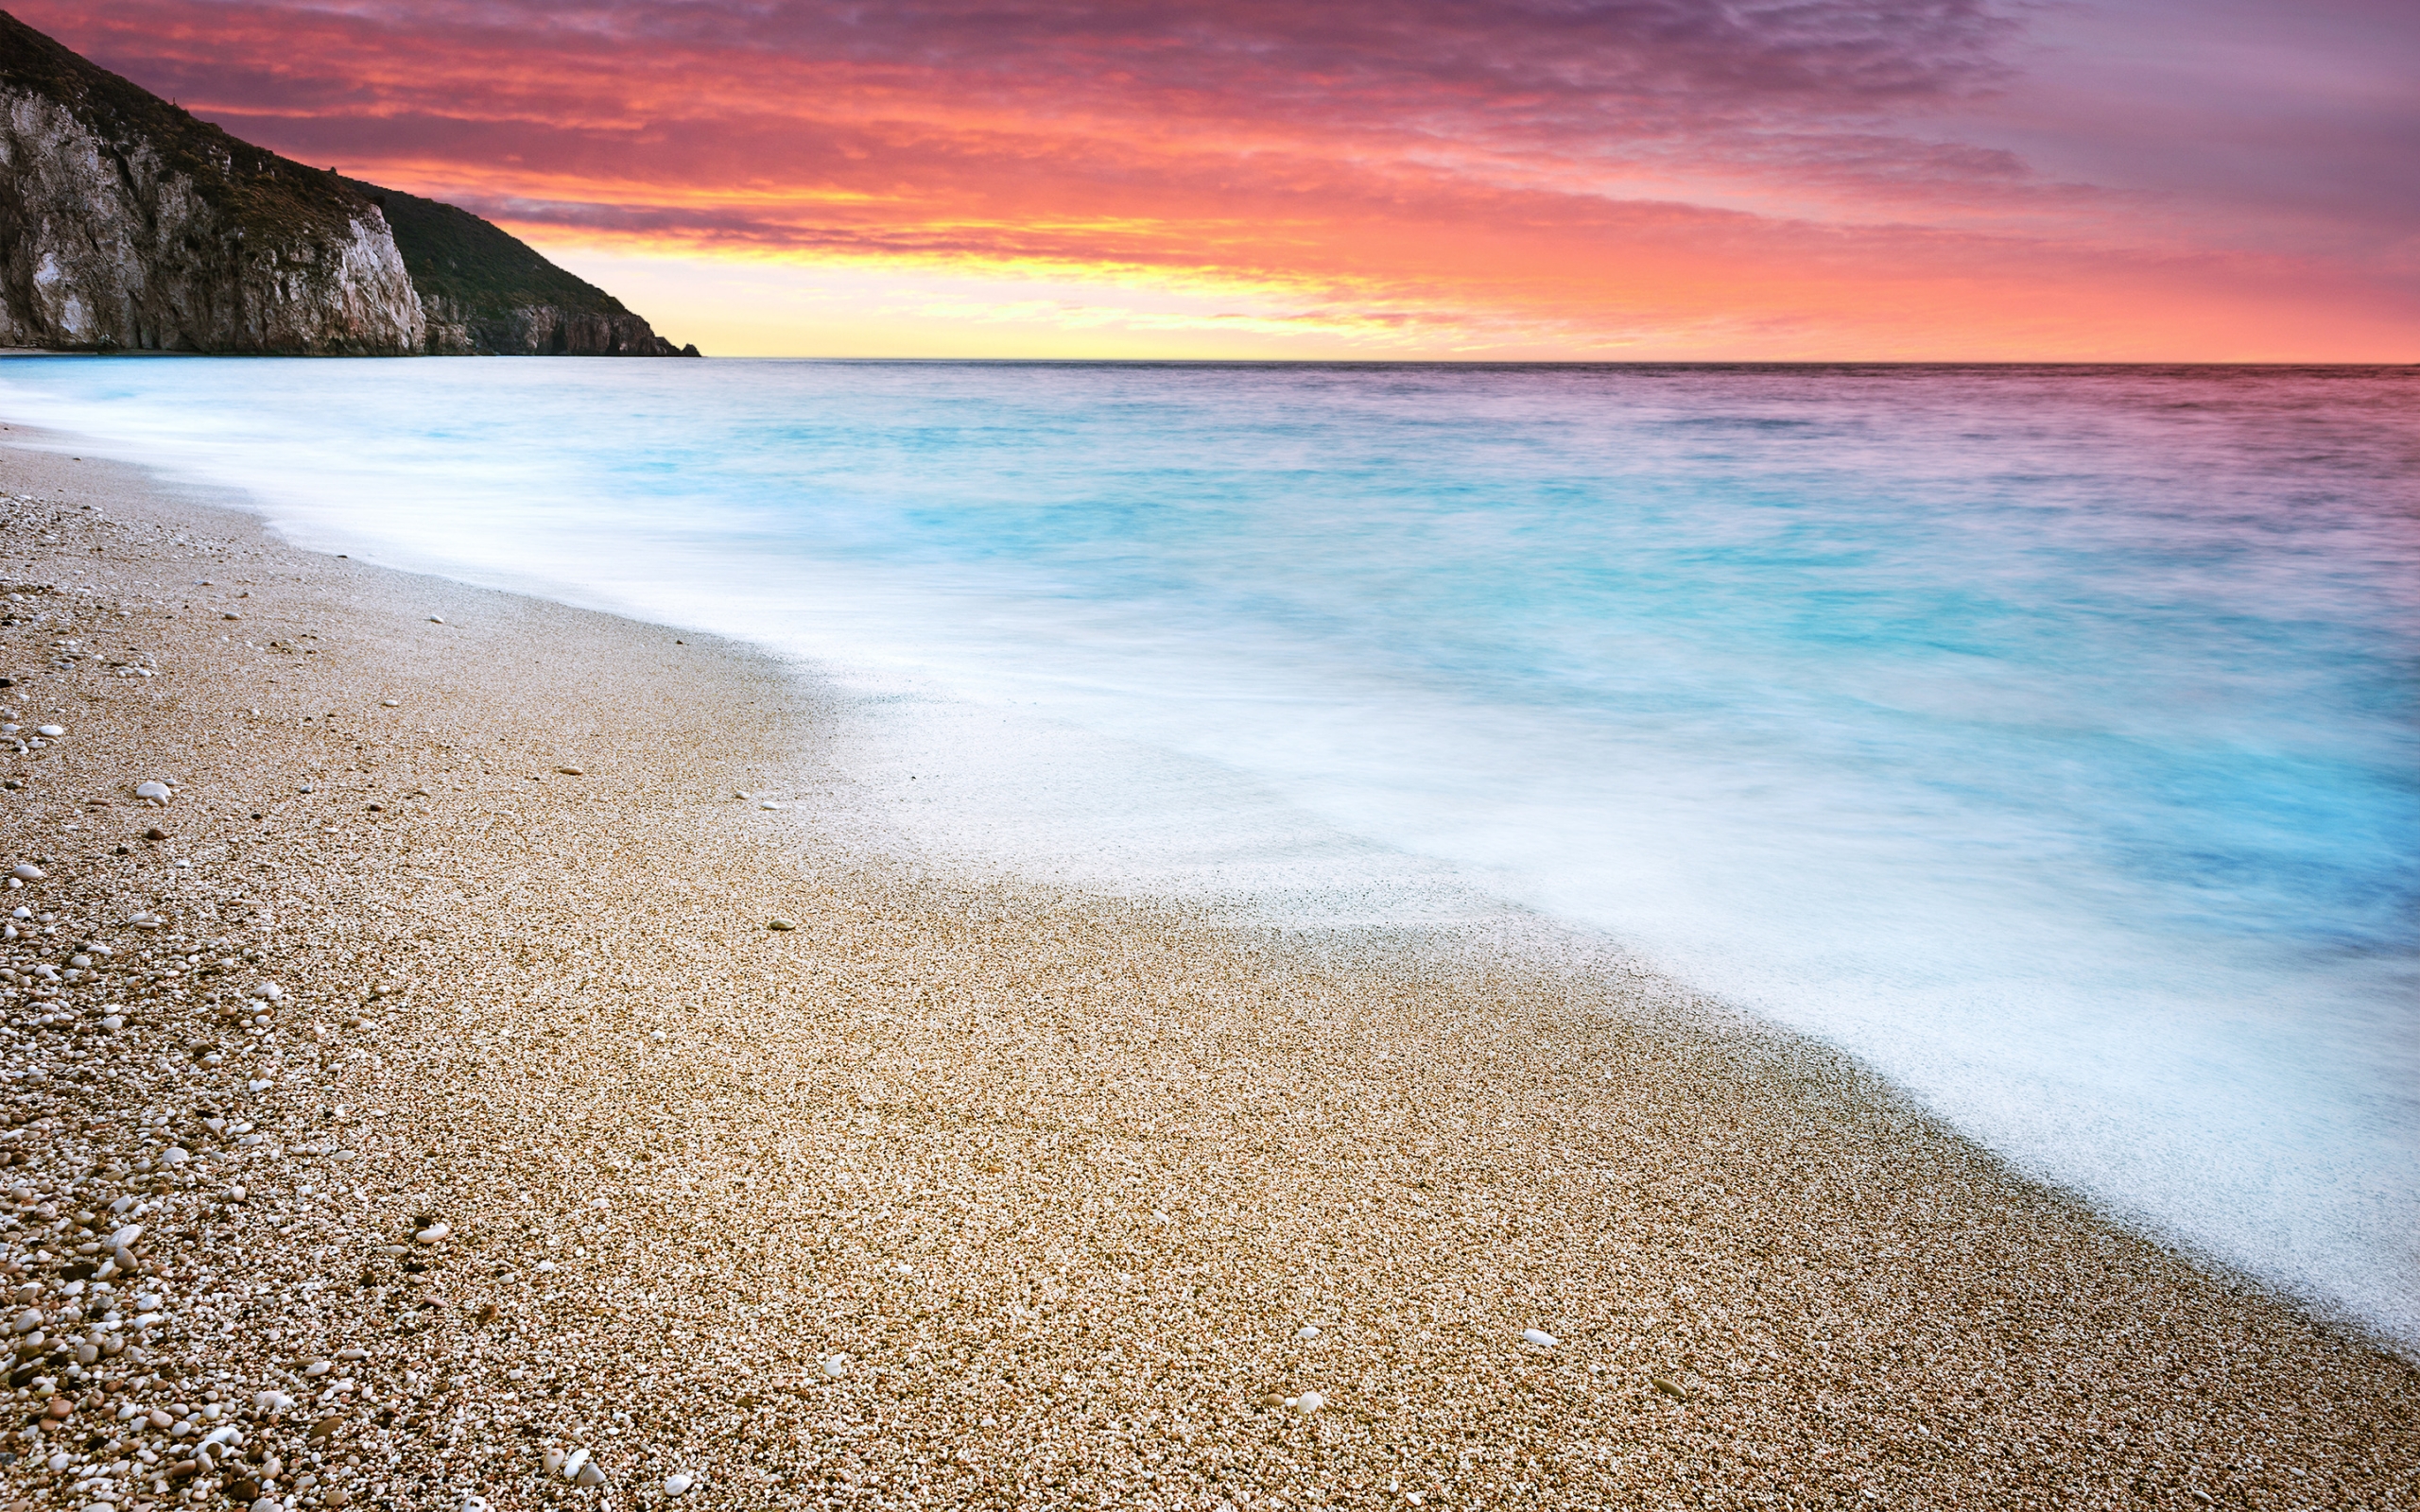 Fire Sunset at Beach for 2560 x 1600 widescreen resolution